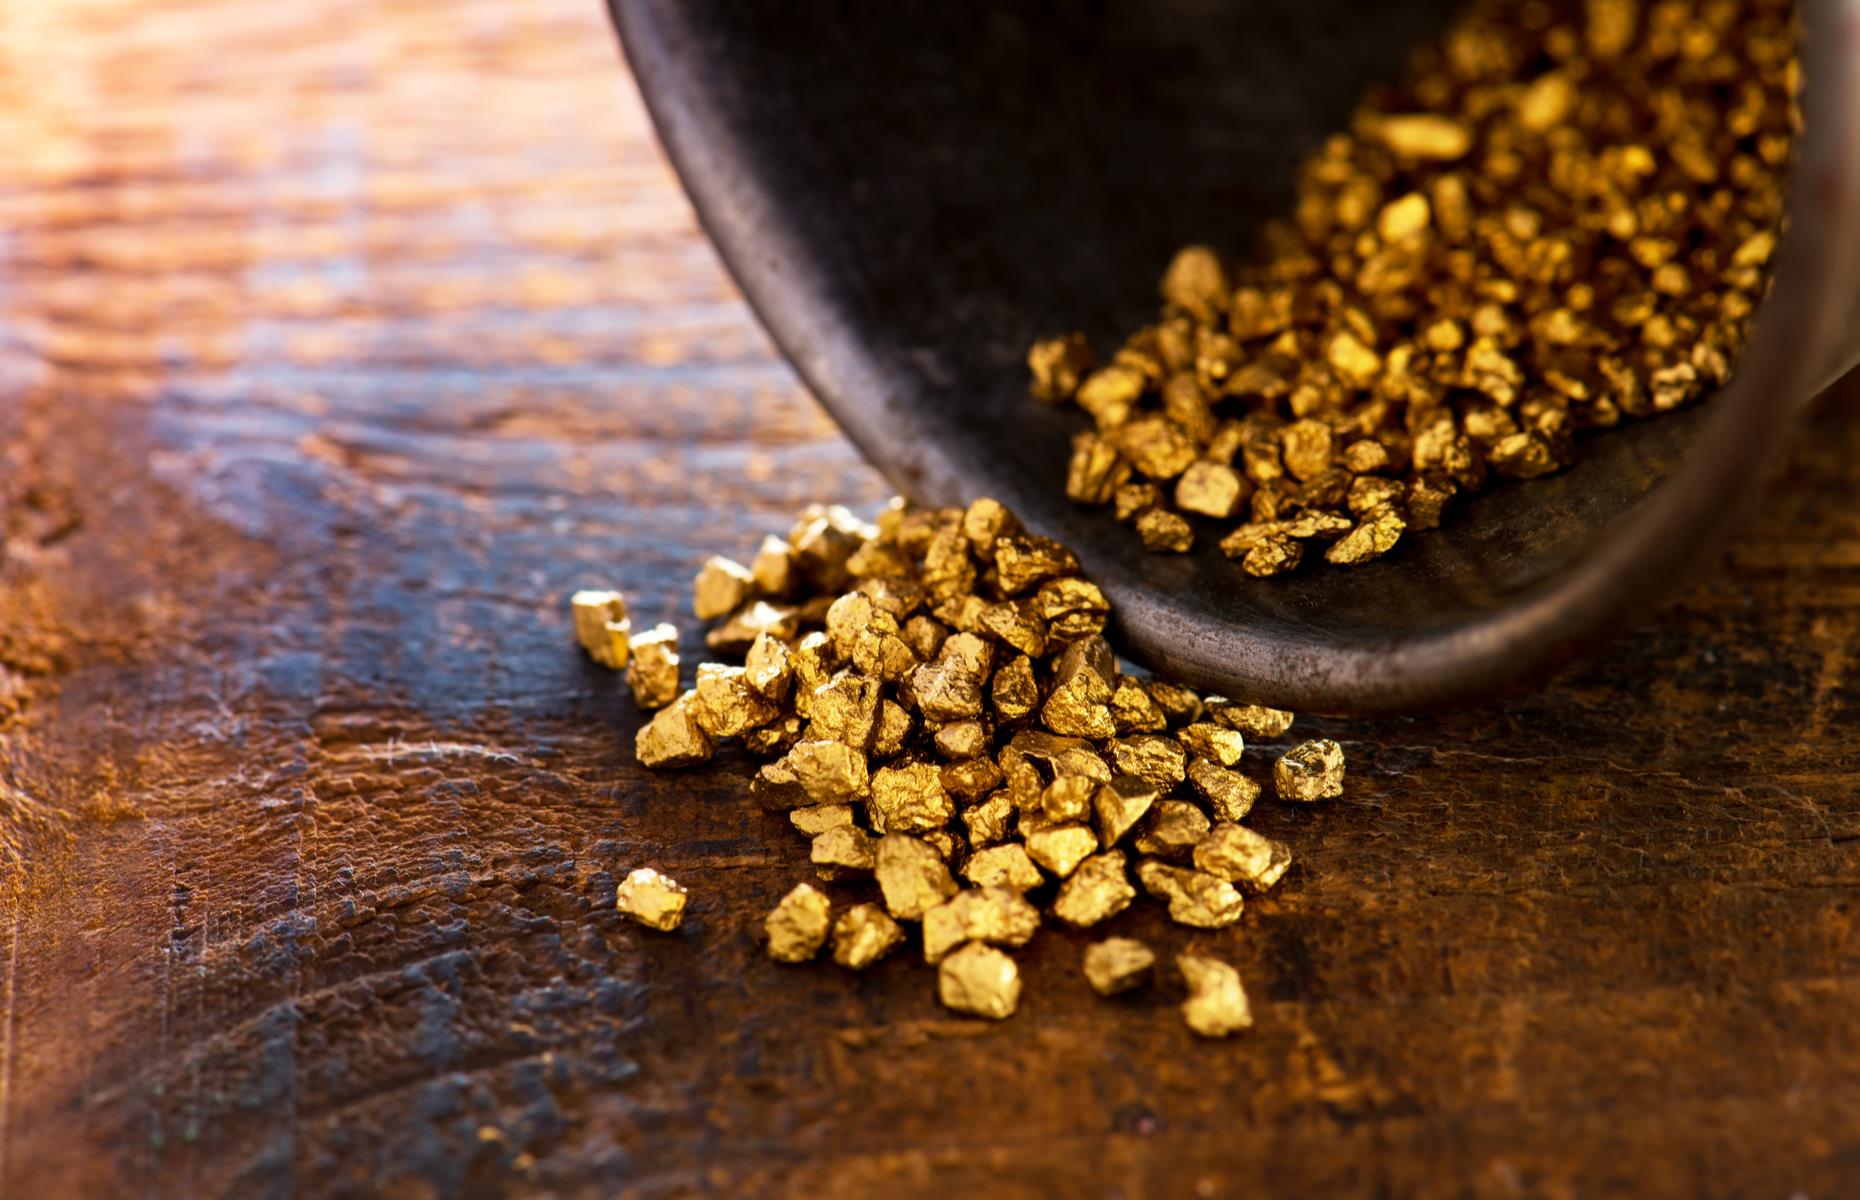 أكبر عشر دول منتجة للذهب في العالم اكثر دولة فيها ذهب أكبر بلد منتج للذهب في العالم اكبر منتج للذهب في العالم